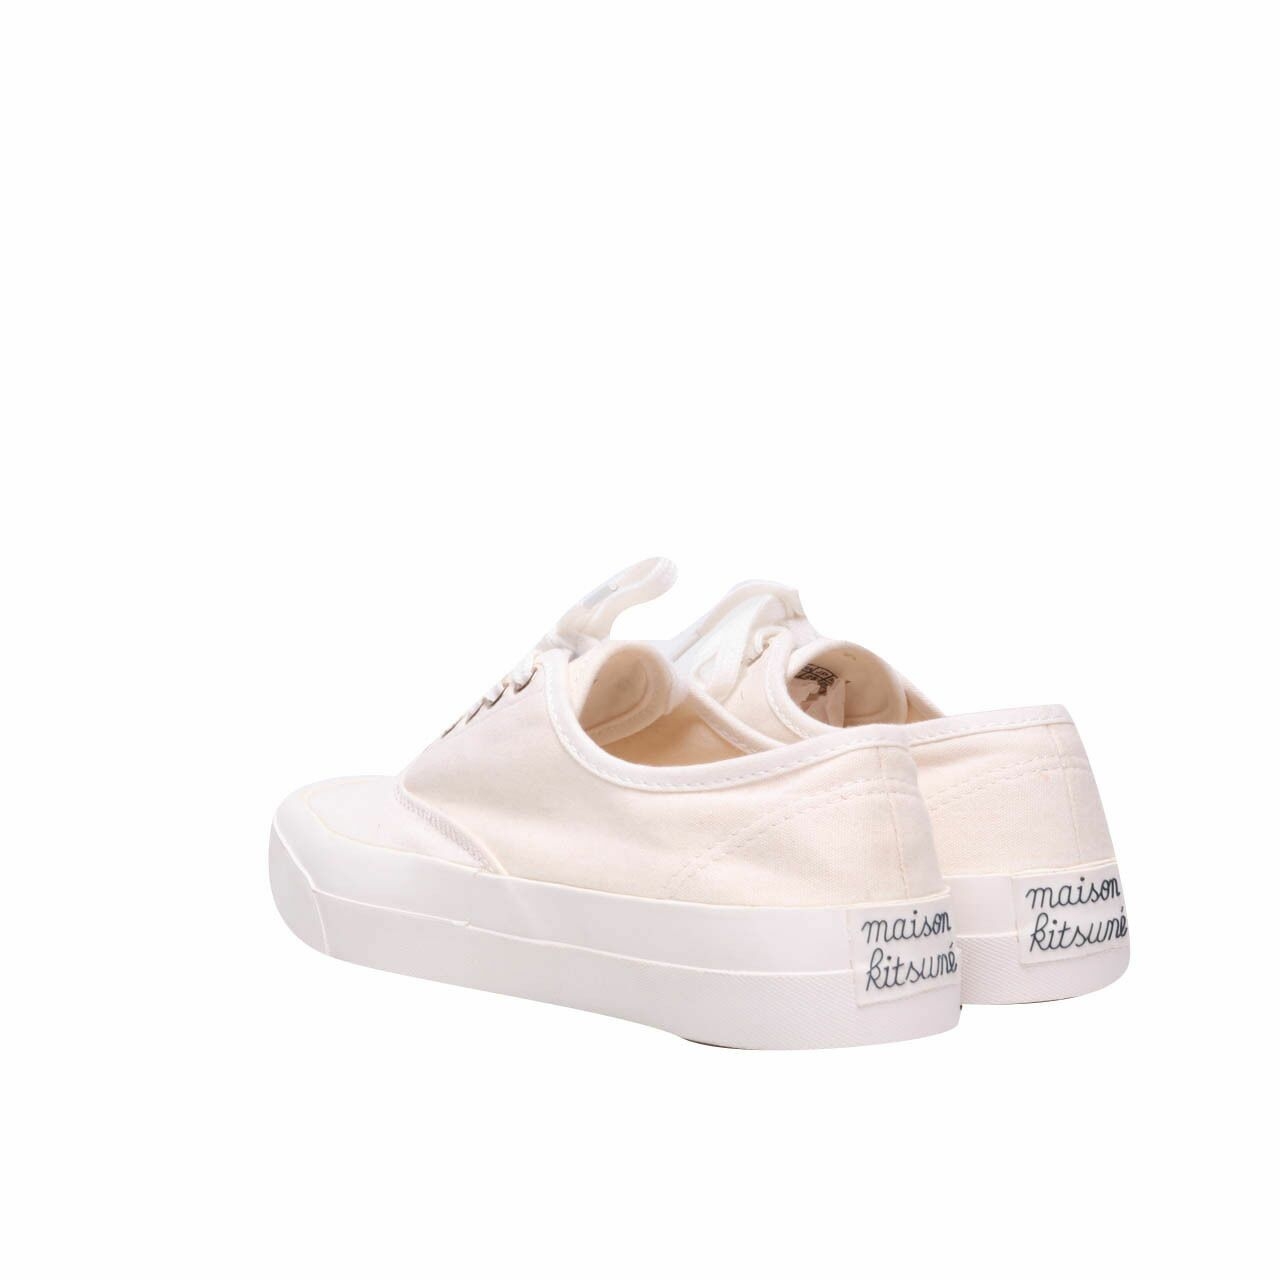 Maison Kitsune White Sneakers